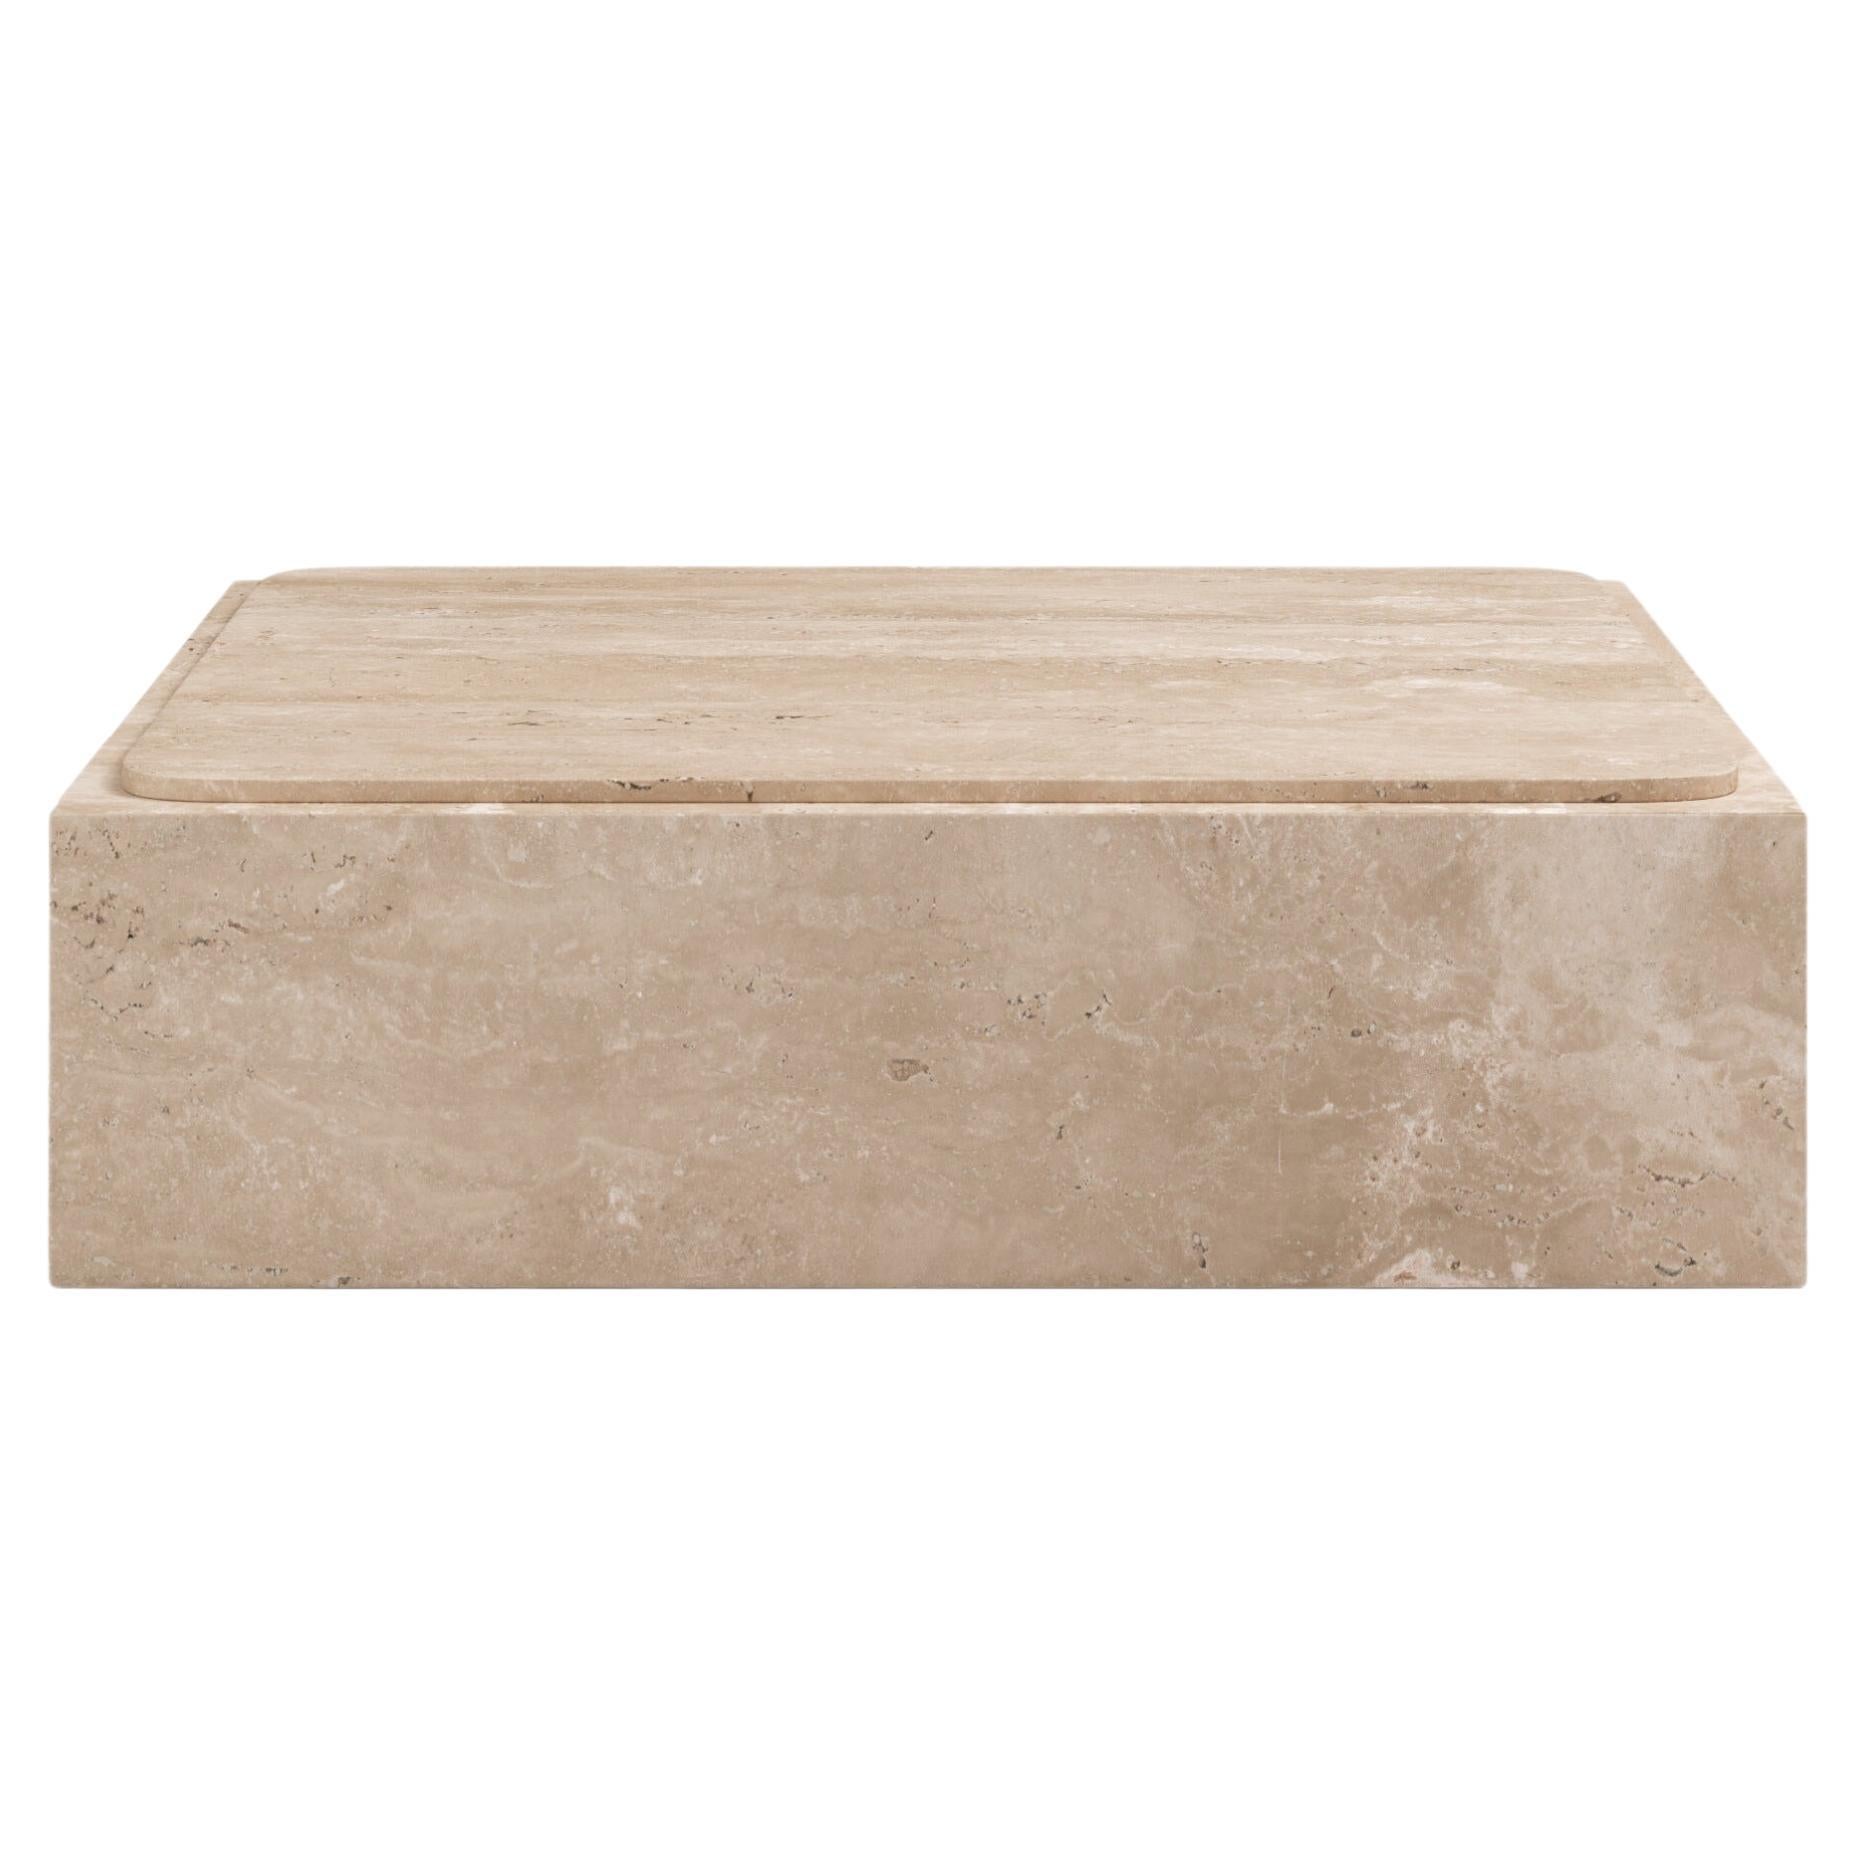 FORM(LA) Cubo Square Plinth Coffee Table 48”L x 48"W x 13”H Travertino Crema VC For Sale